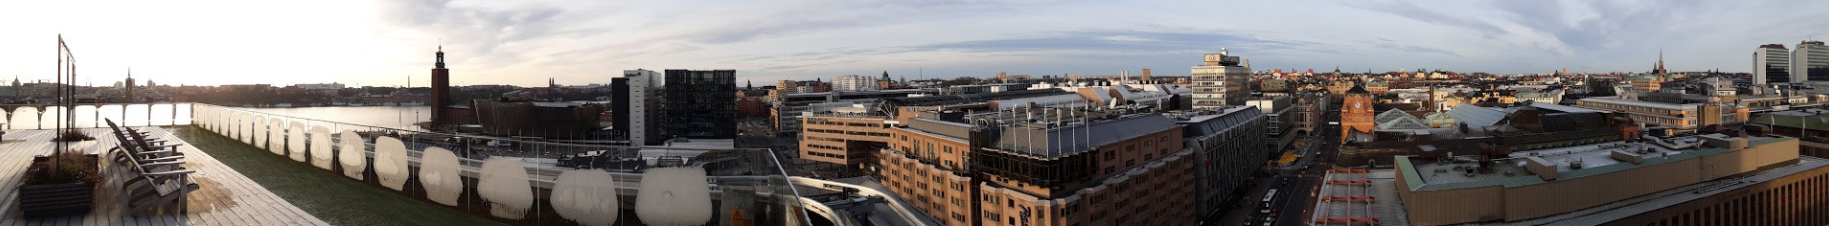 Panorámica de Estocolmo, visto desde la terraza en el tejado del hotel